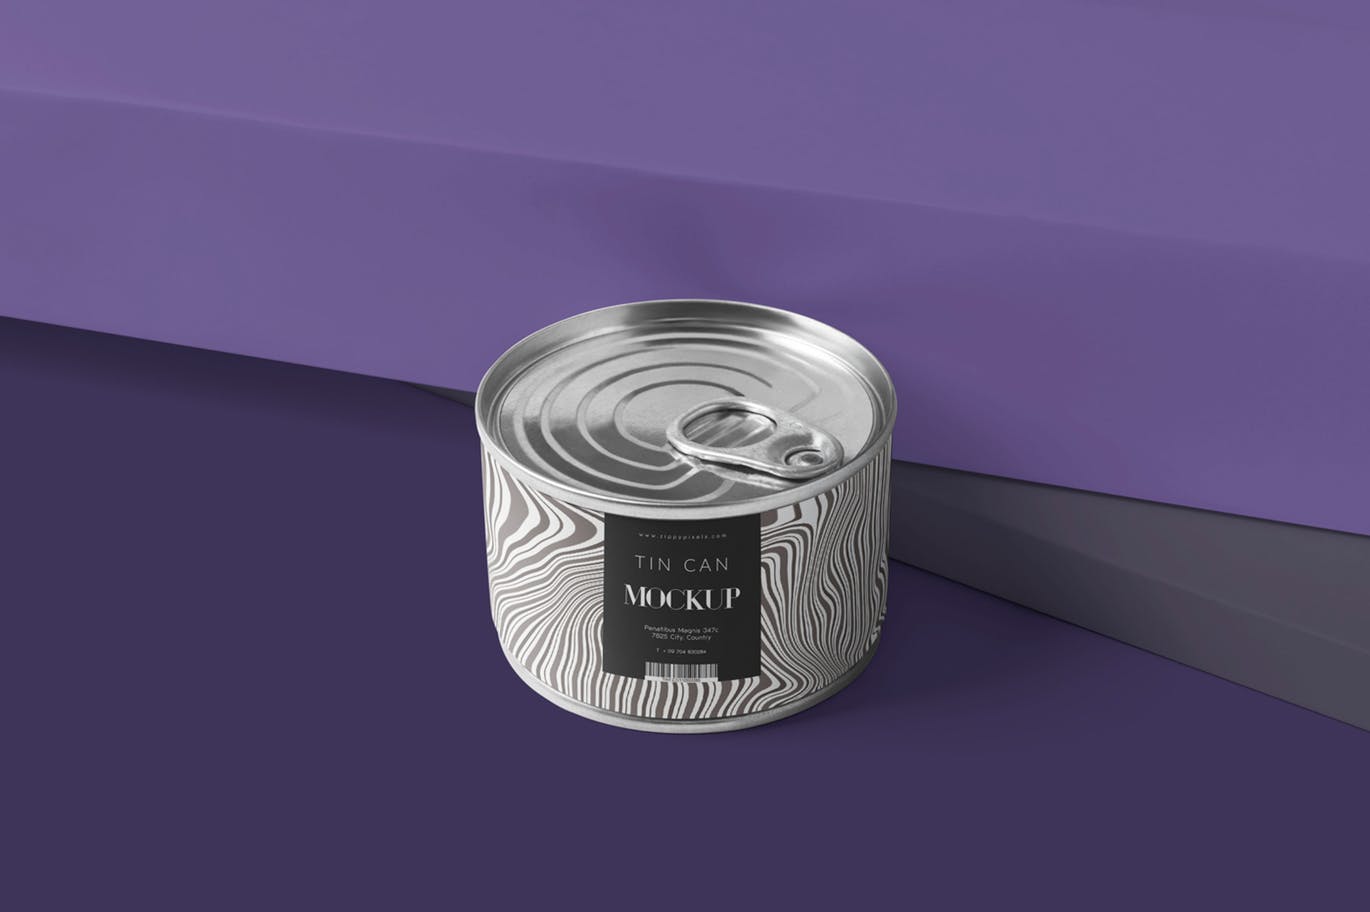 高品质的铝箔包装食品罐头包装设计VI样机展示模型